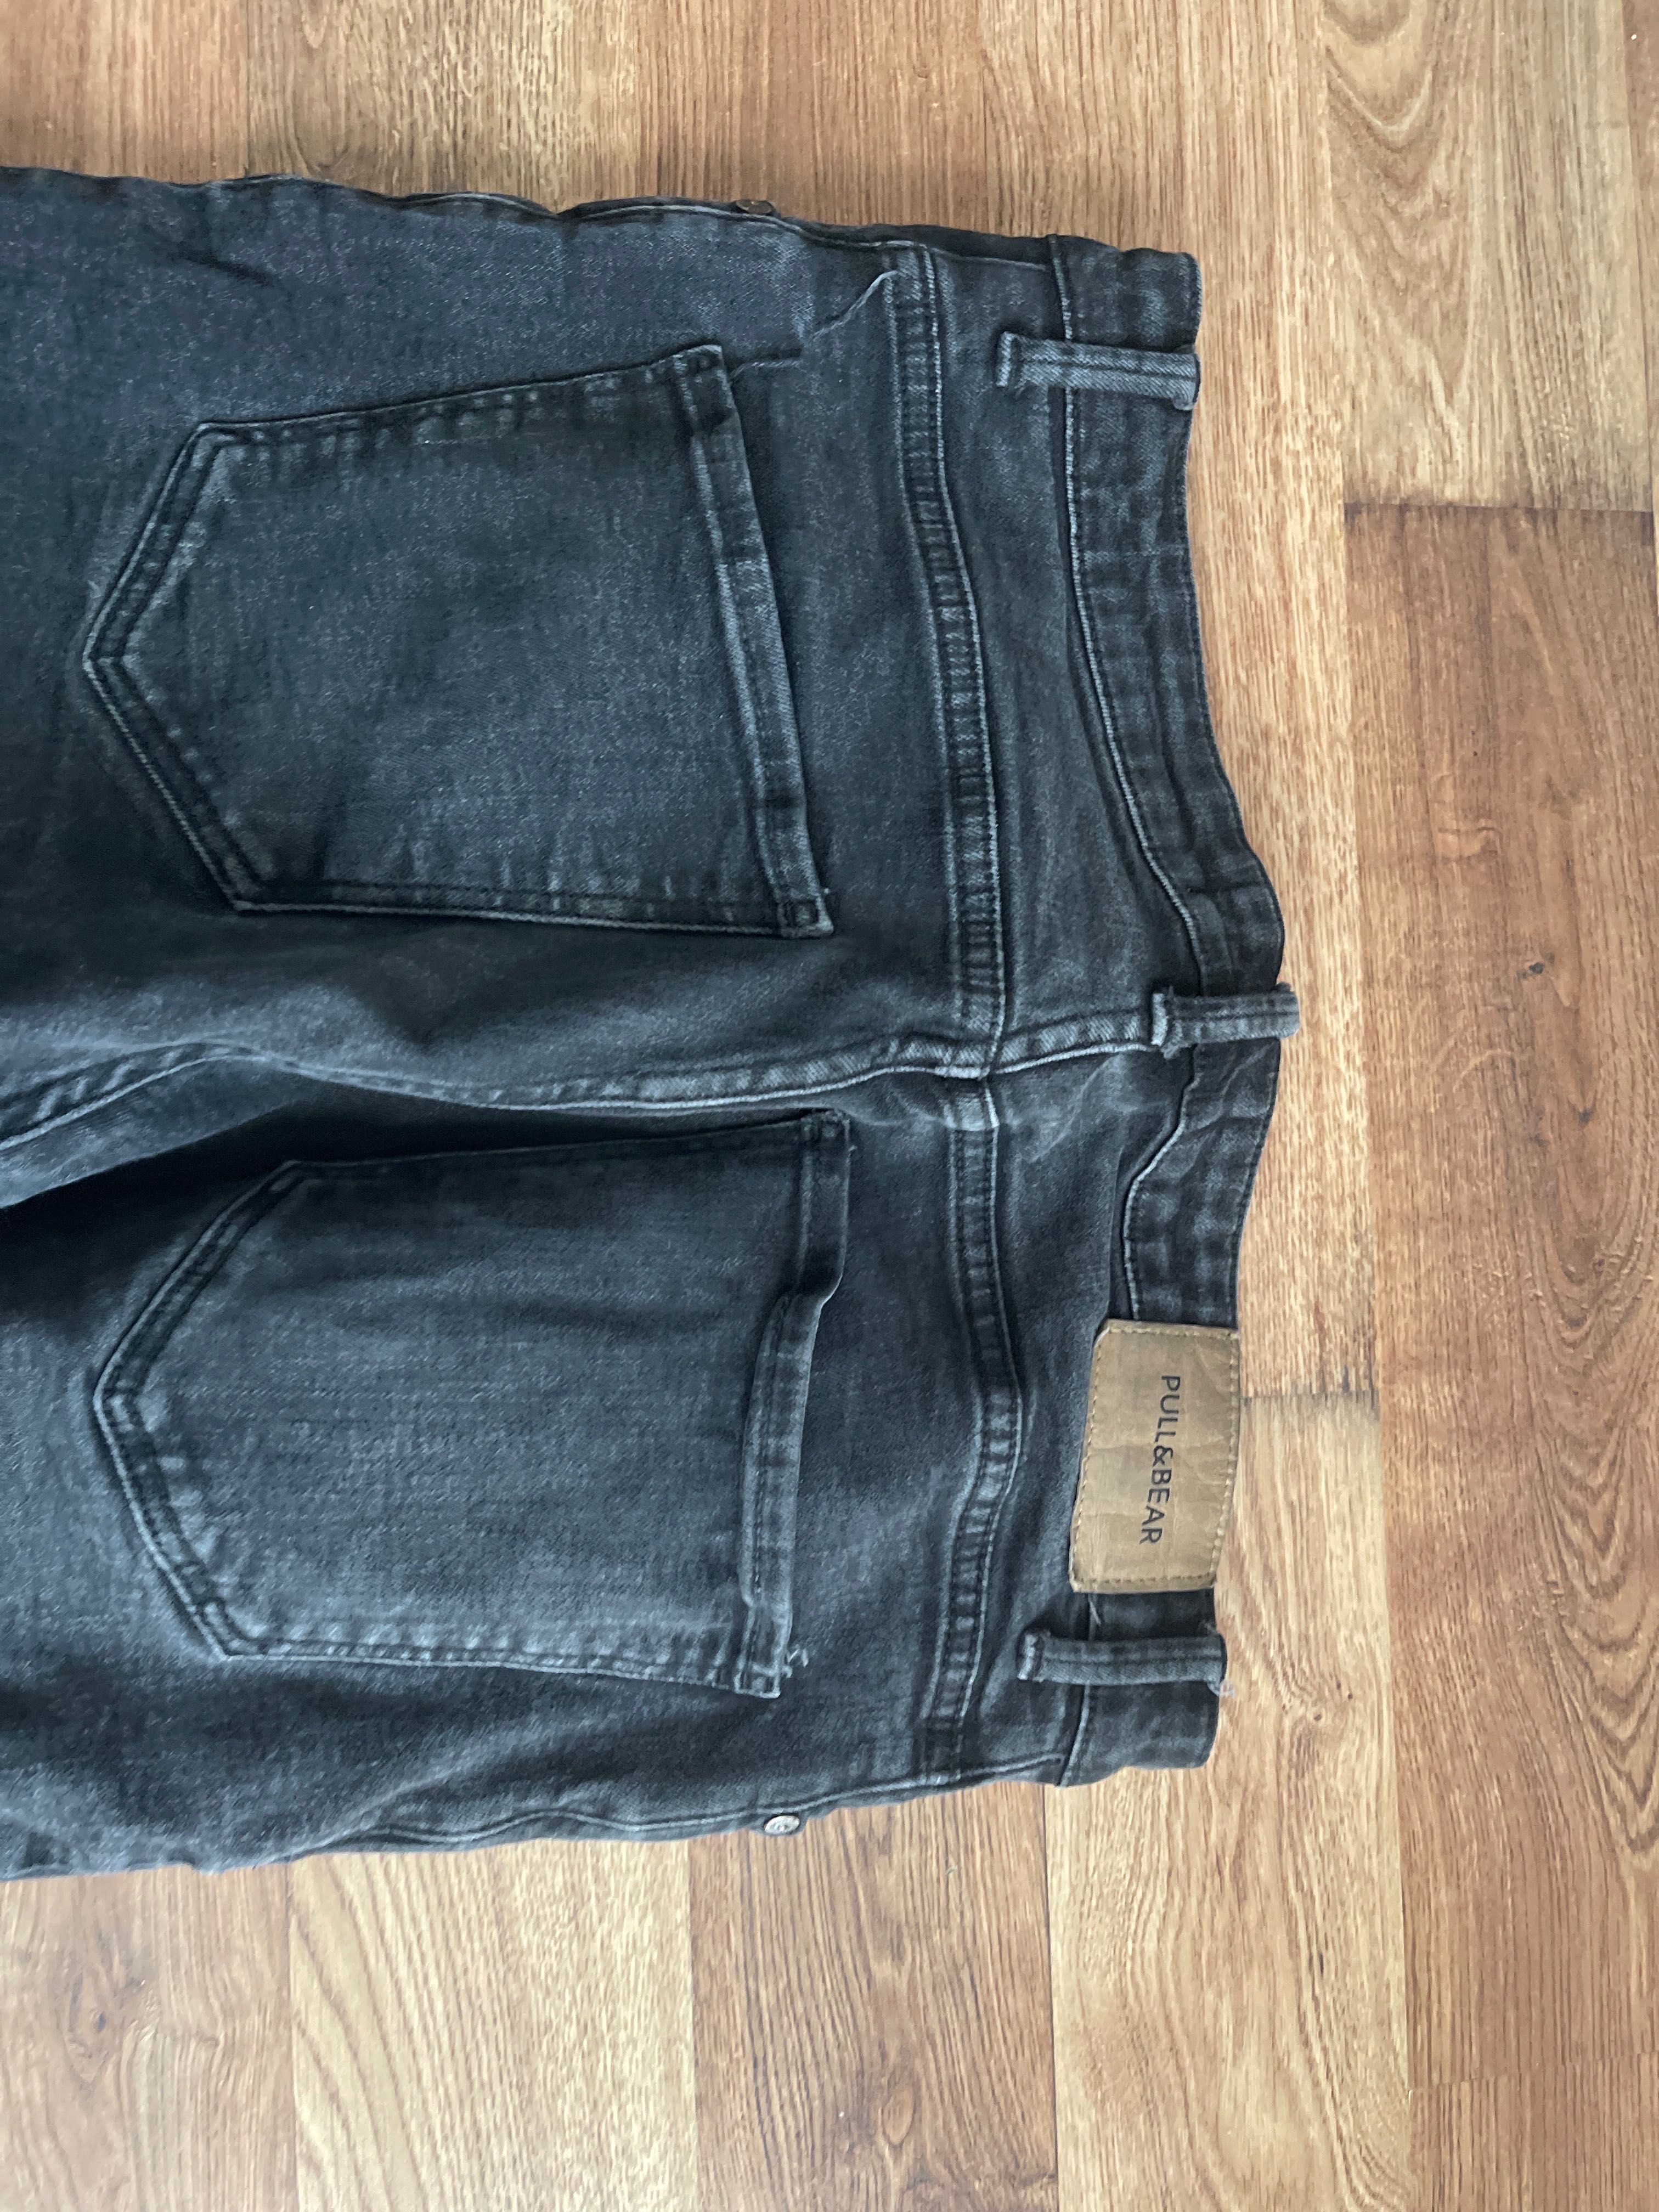 Spodnie męskie jeans rozm 38 polecam